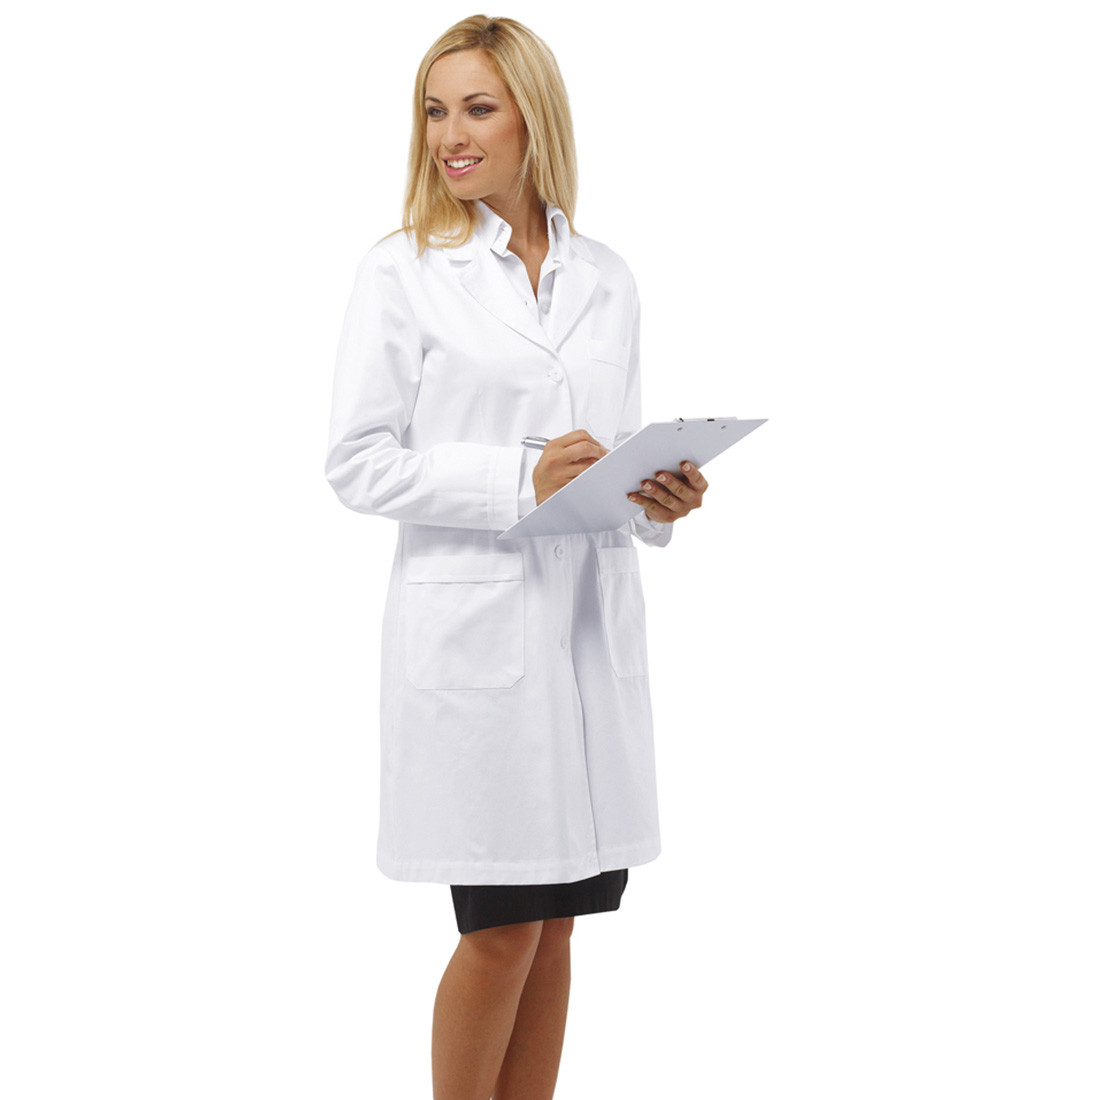 Blouse médicalpour femmes REYNARD - Les vêtements de protection